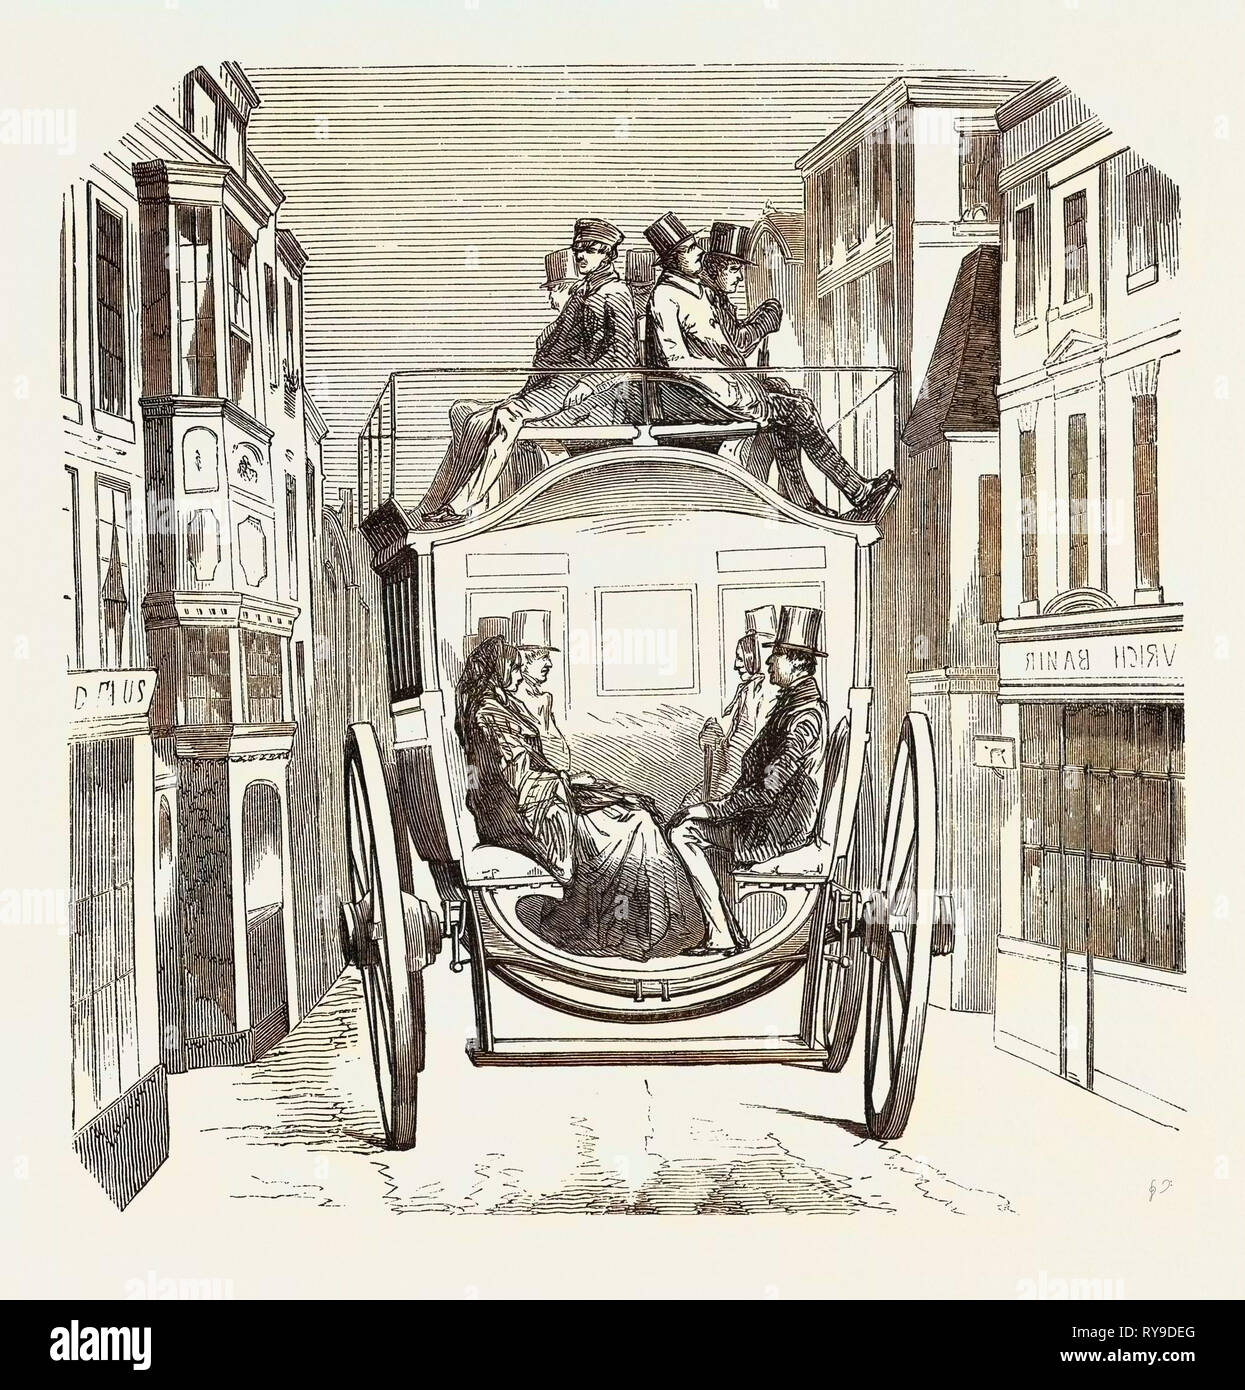 Modell der neuen Bus Unternehmen von der City von London angenommen. Innenverkleidung. 1855, UK. Gravur Stockfoto